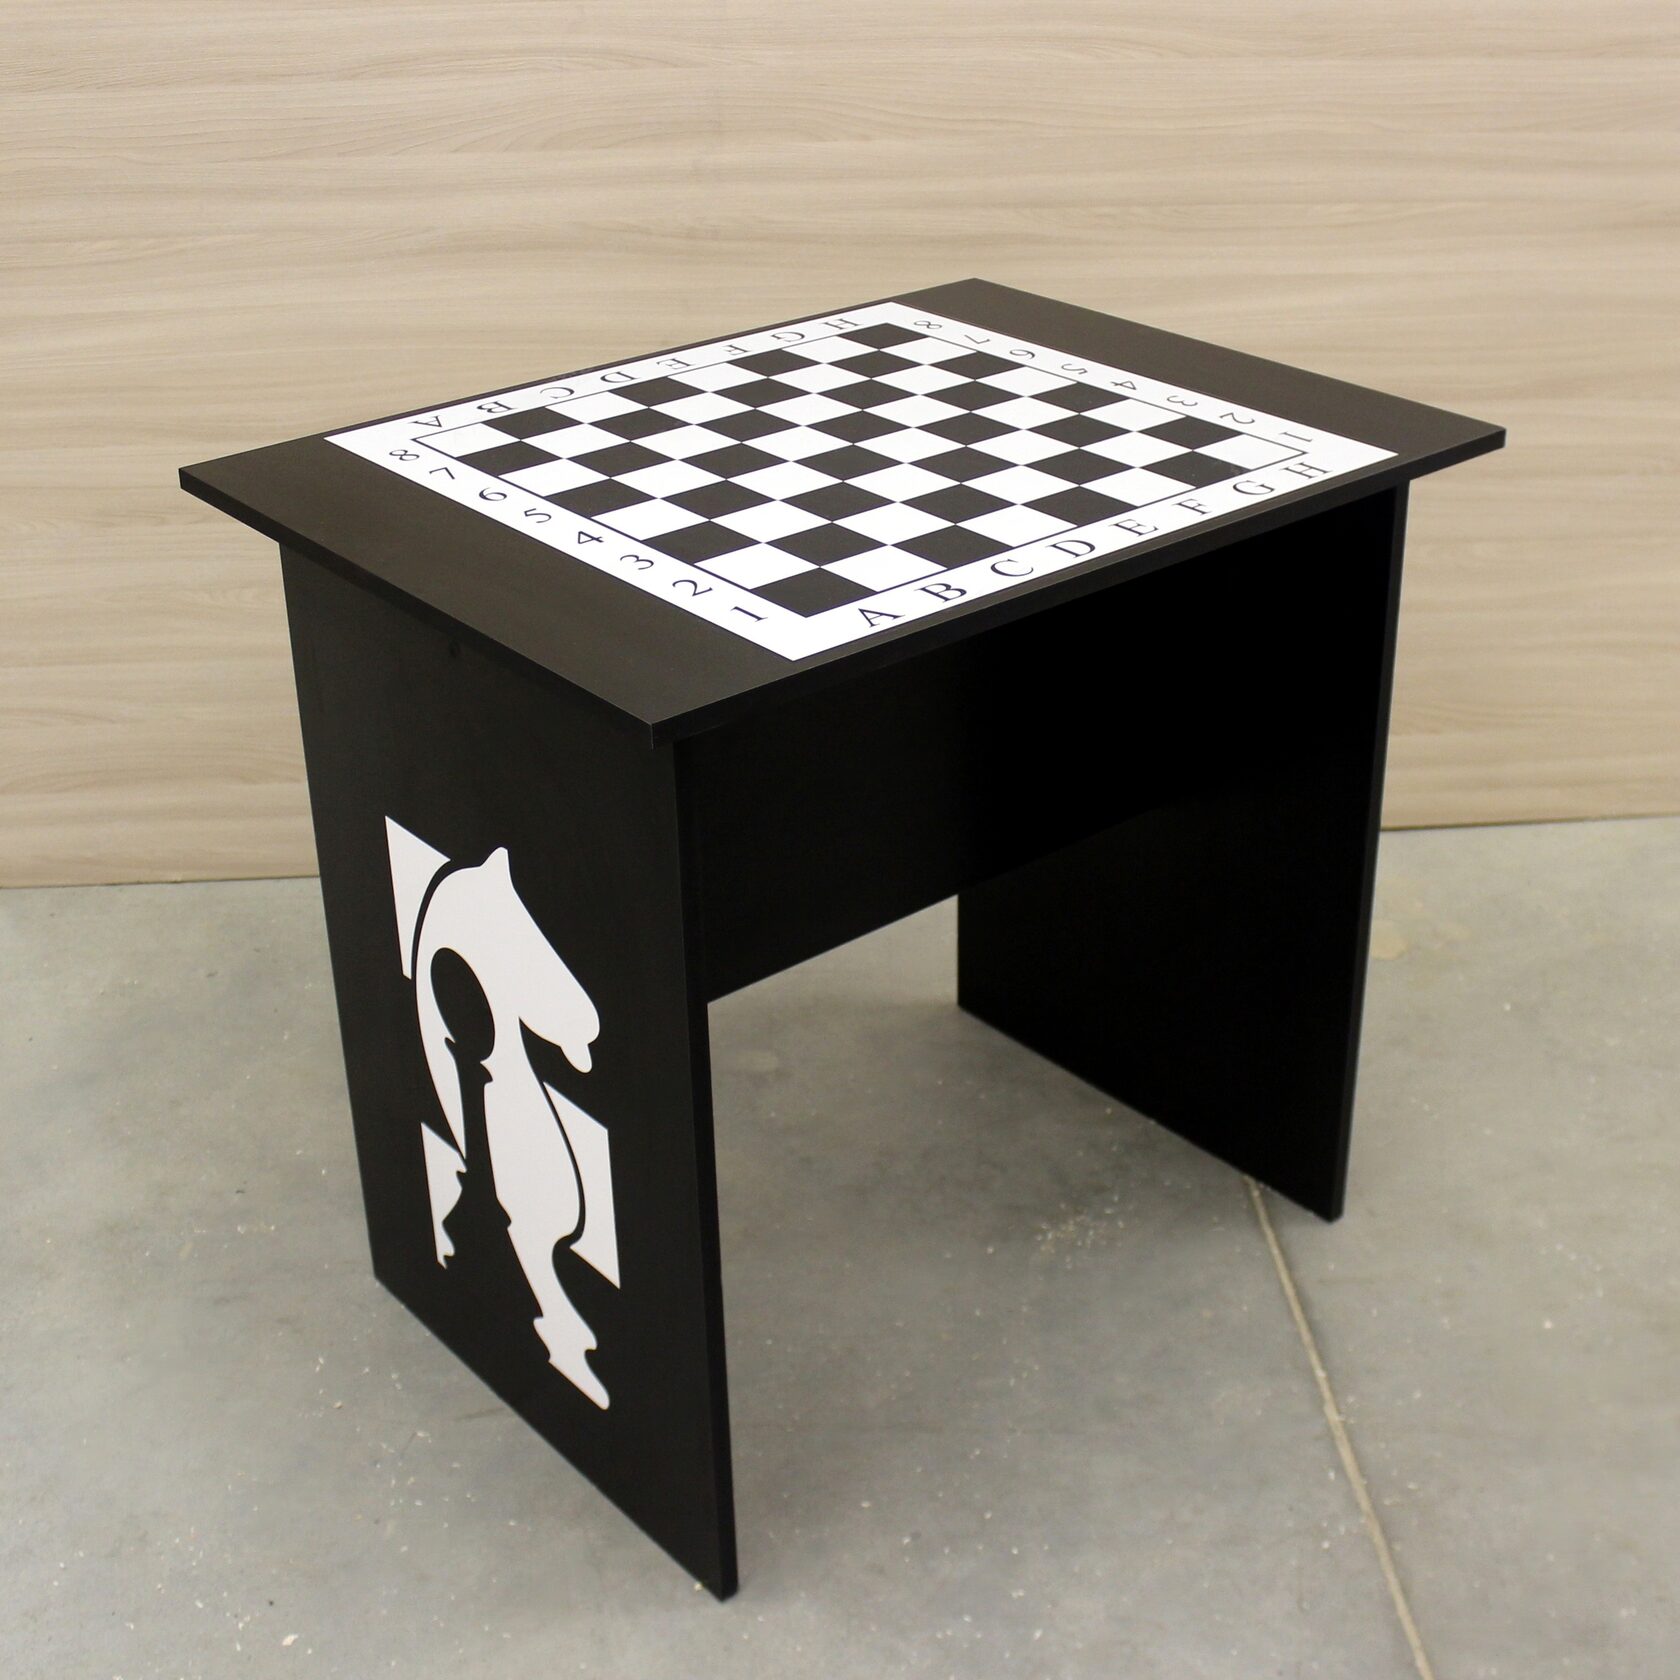 стол для шахмат большой